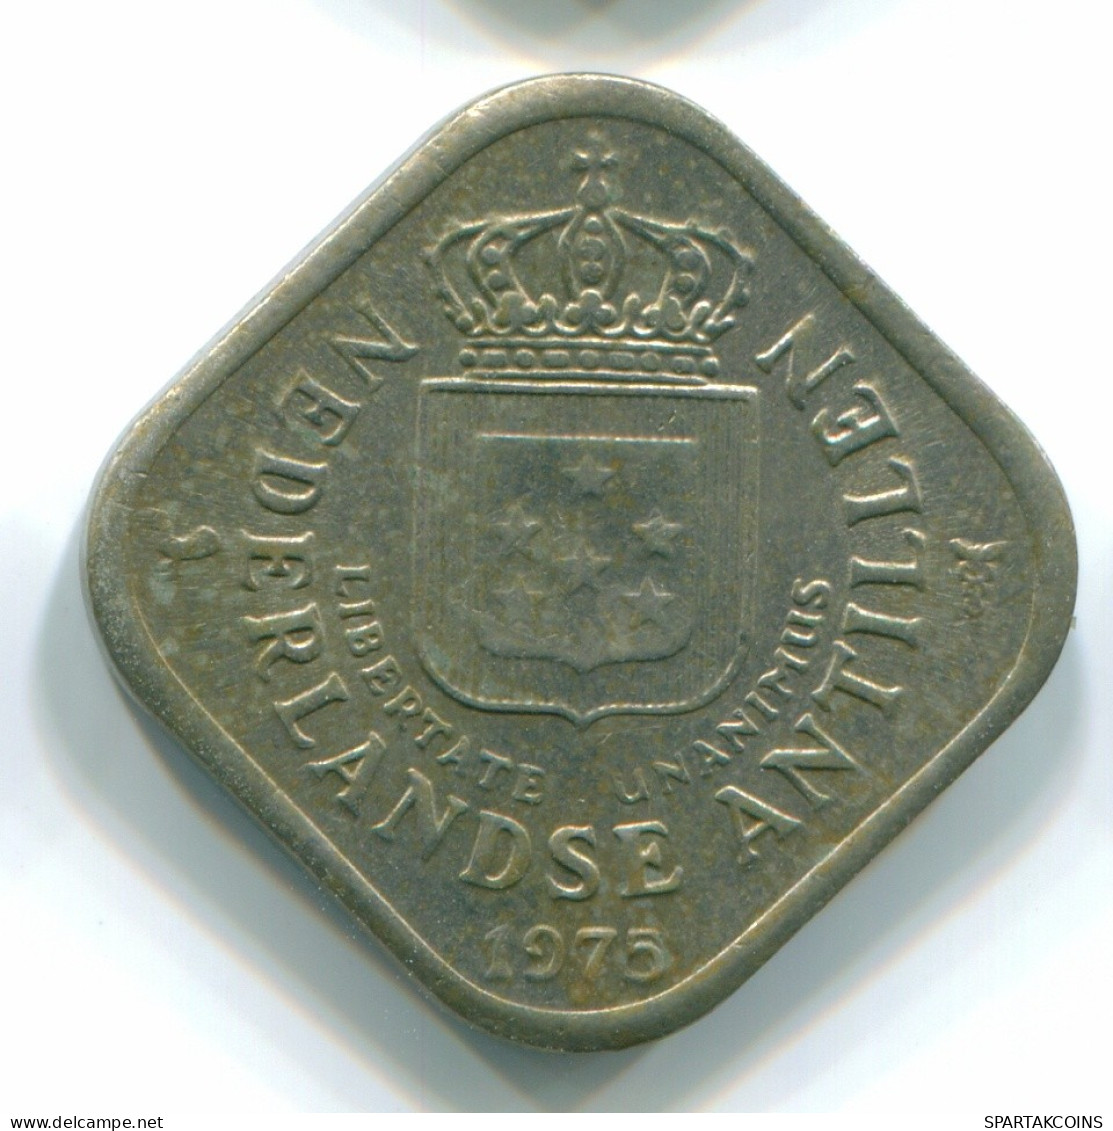 5 CENTS 1975 NETHERLANDS ANTILLES Nickel Colonial Coin #S12236.U.A - Niederländische Antillen